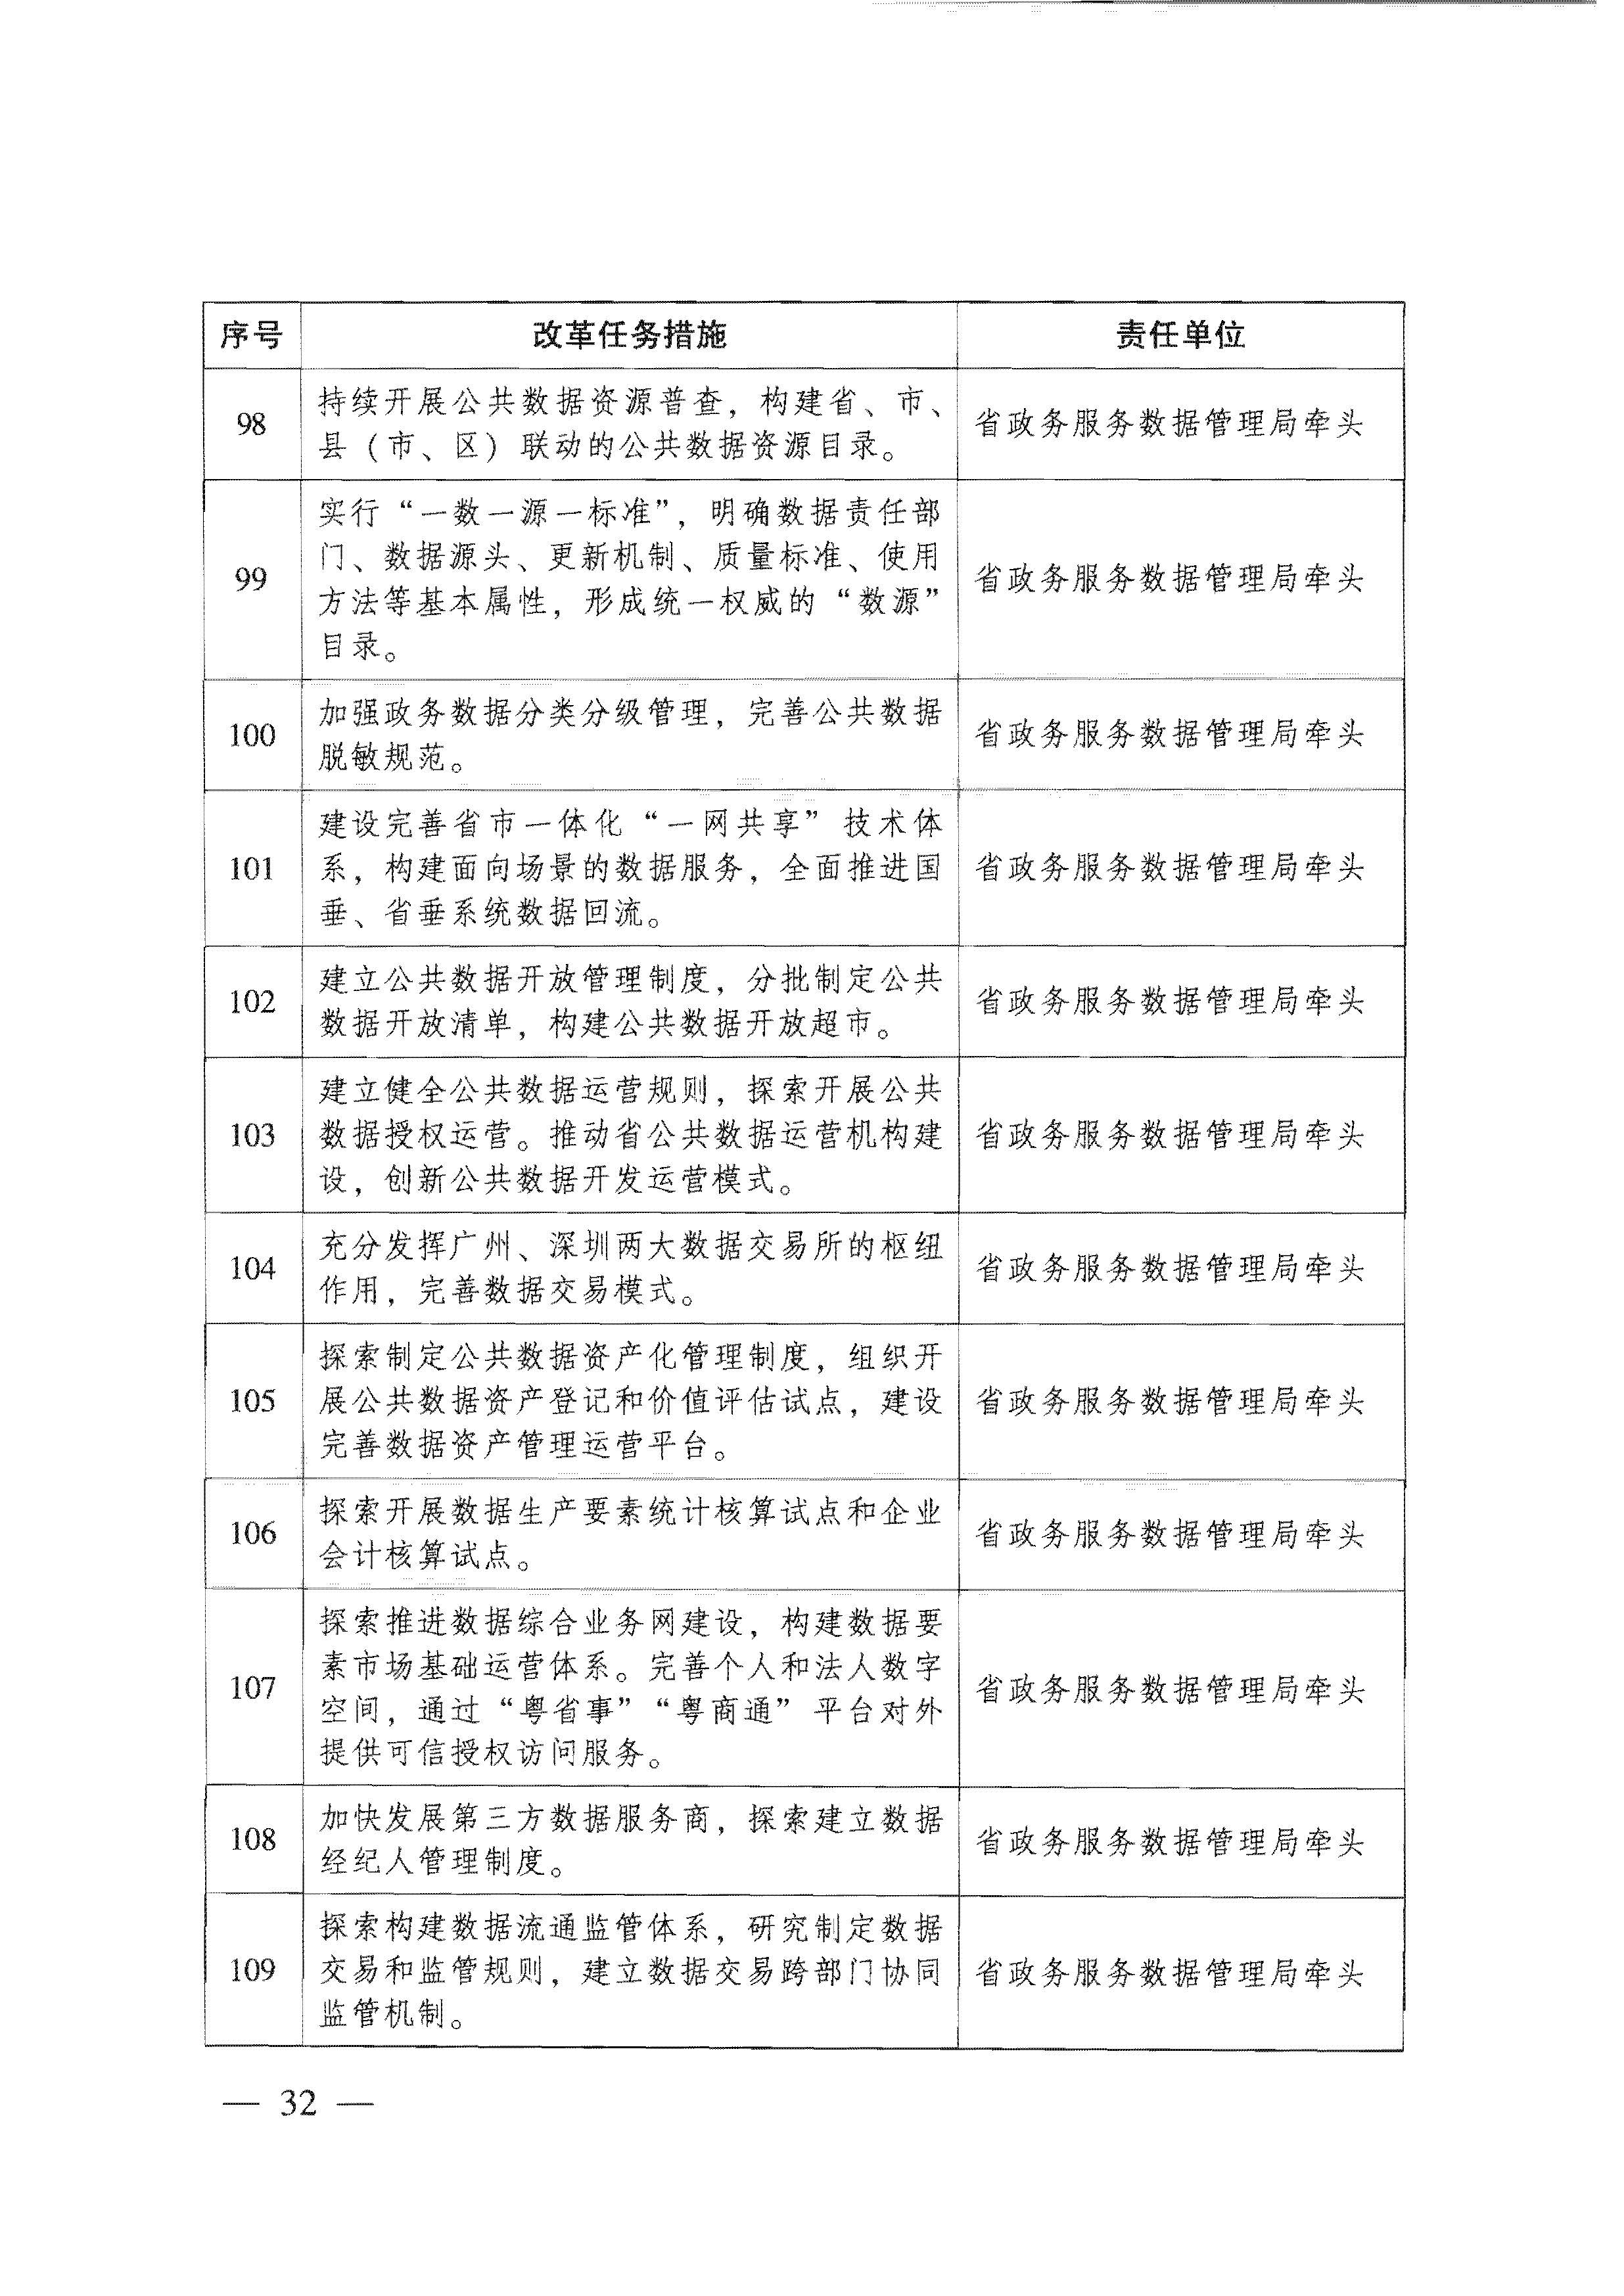 广东省人民政府关于进一步深化数字政府改革建设的实施意见_页面_32.jpg